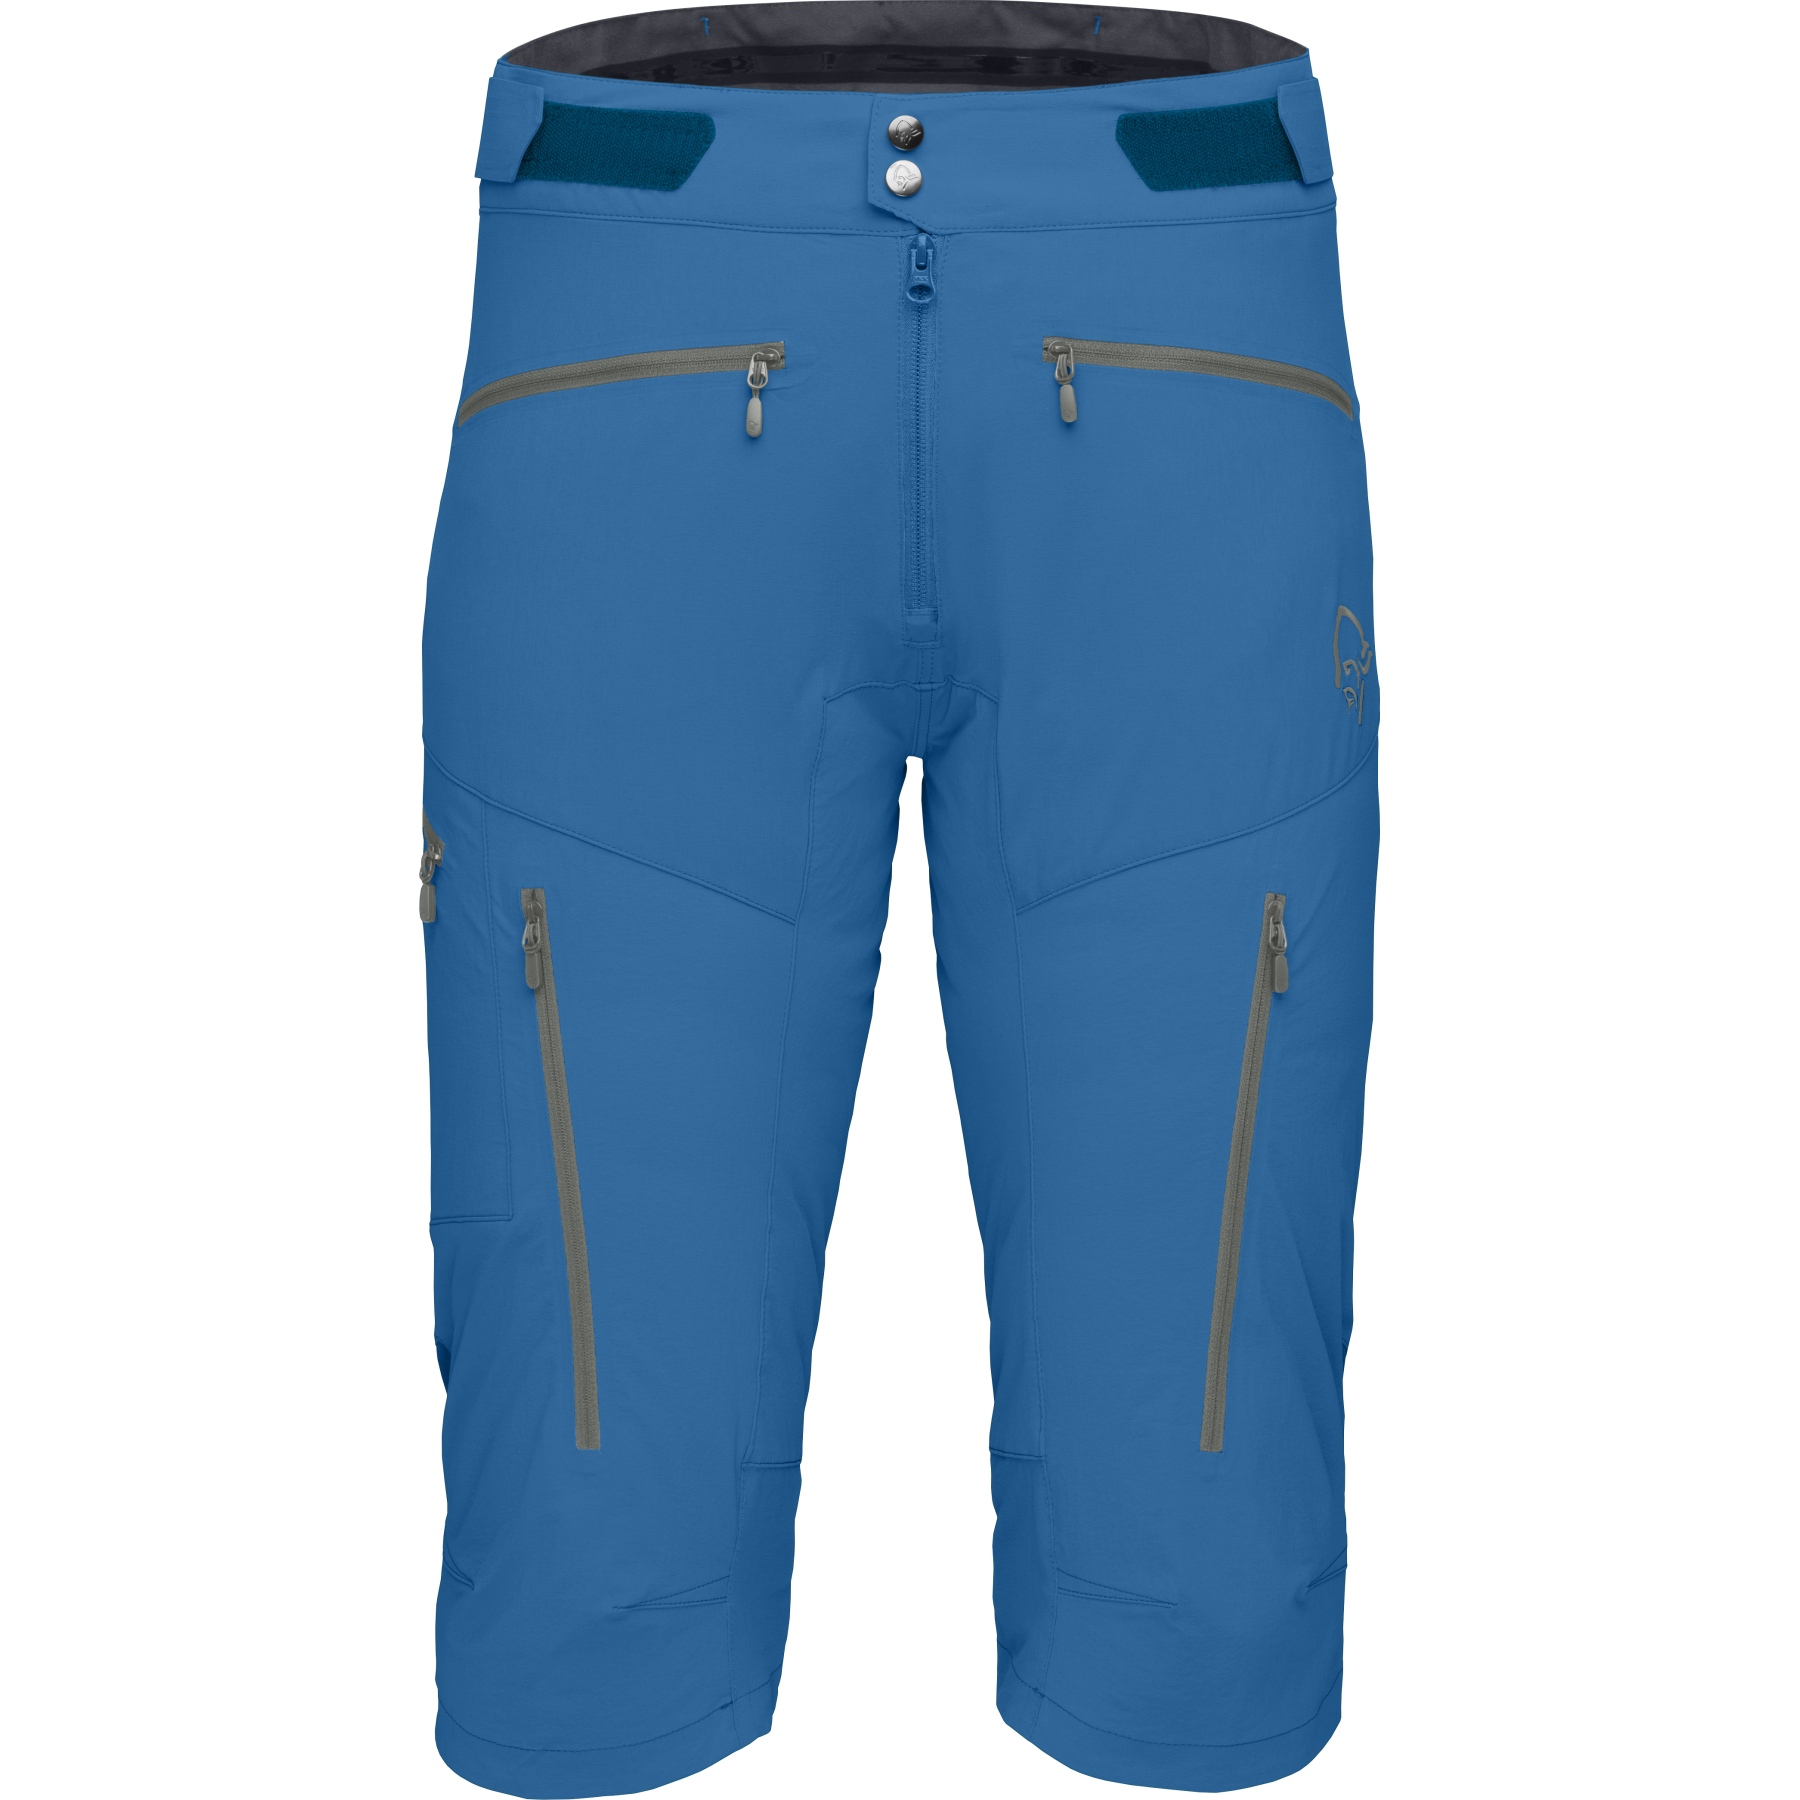 Produktbild von Norrona fjørå flex1 Shorts Herren - Mykonos Blue